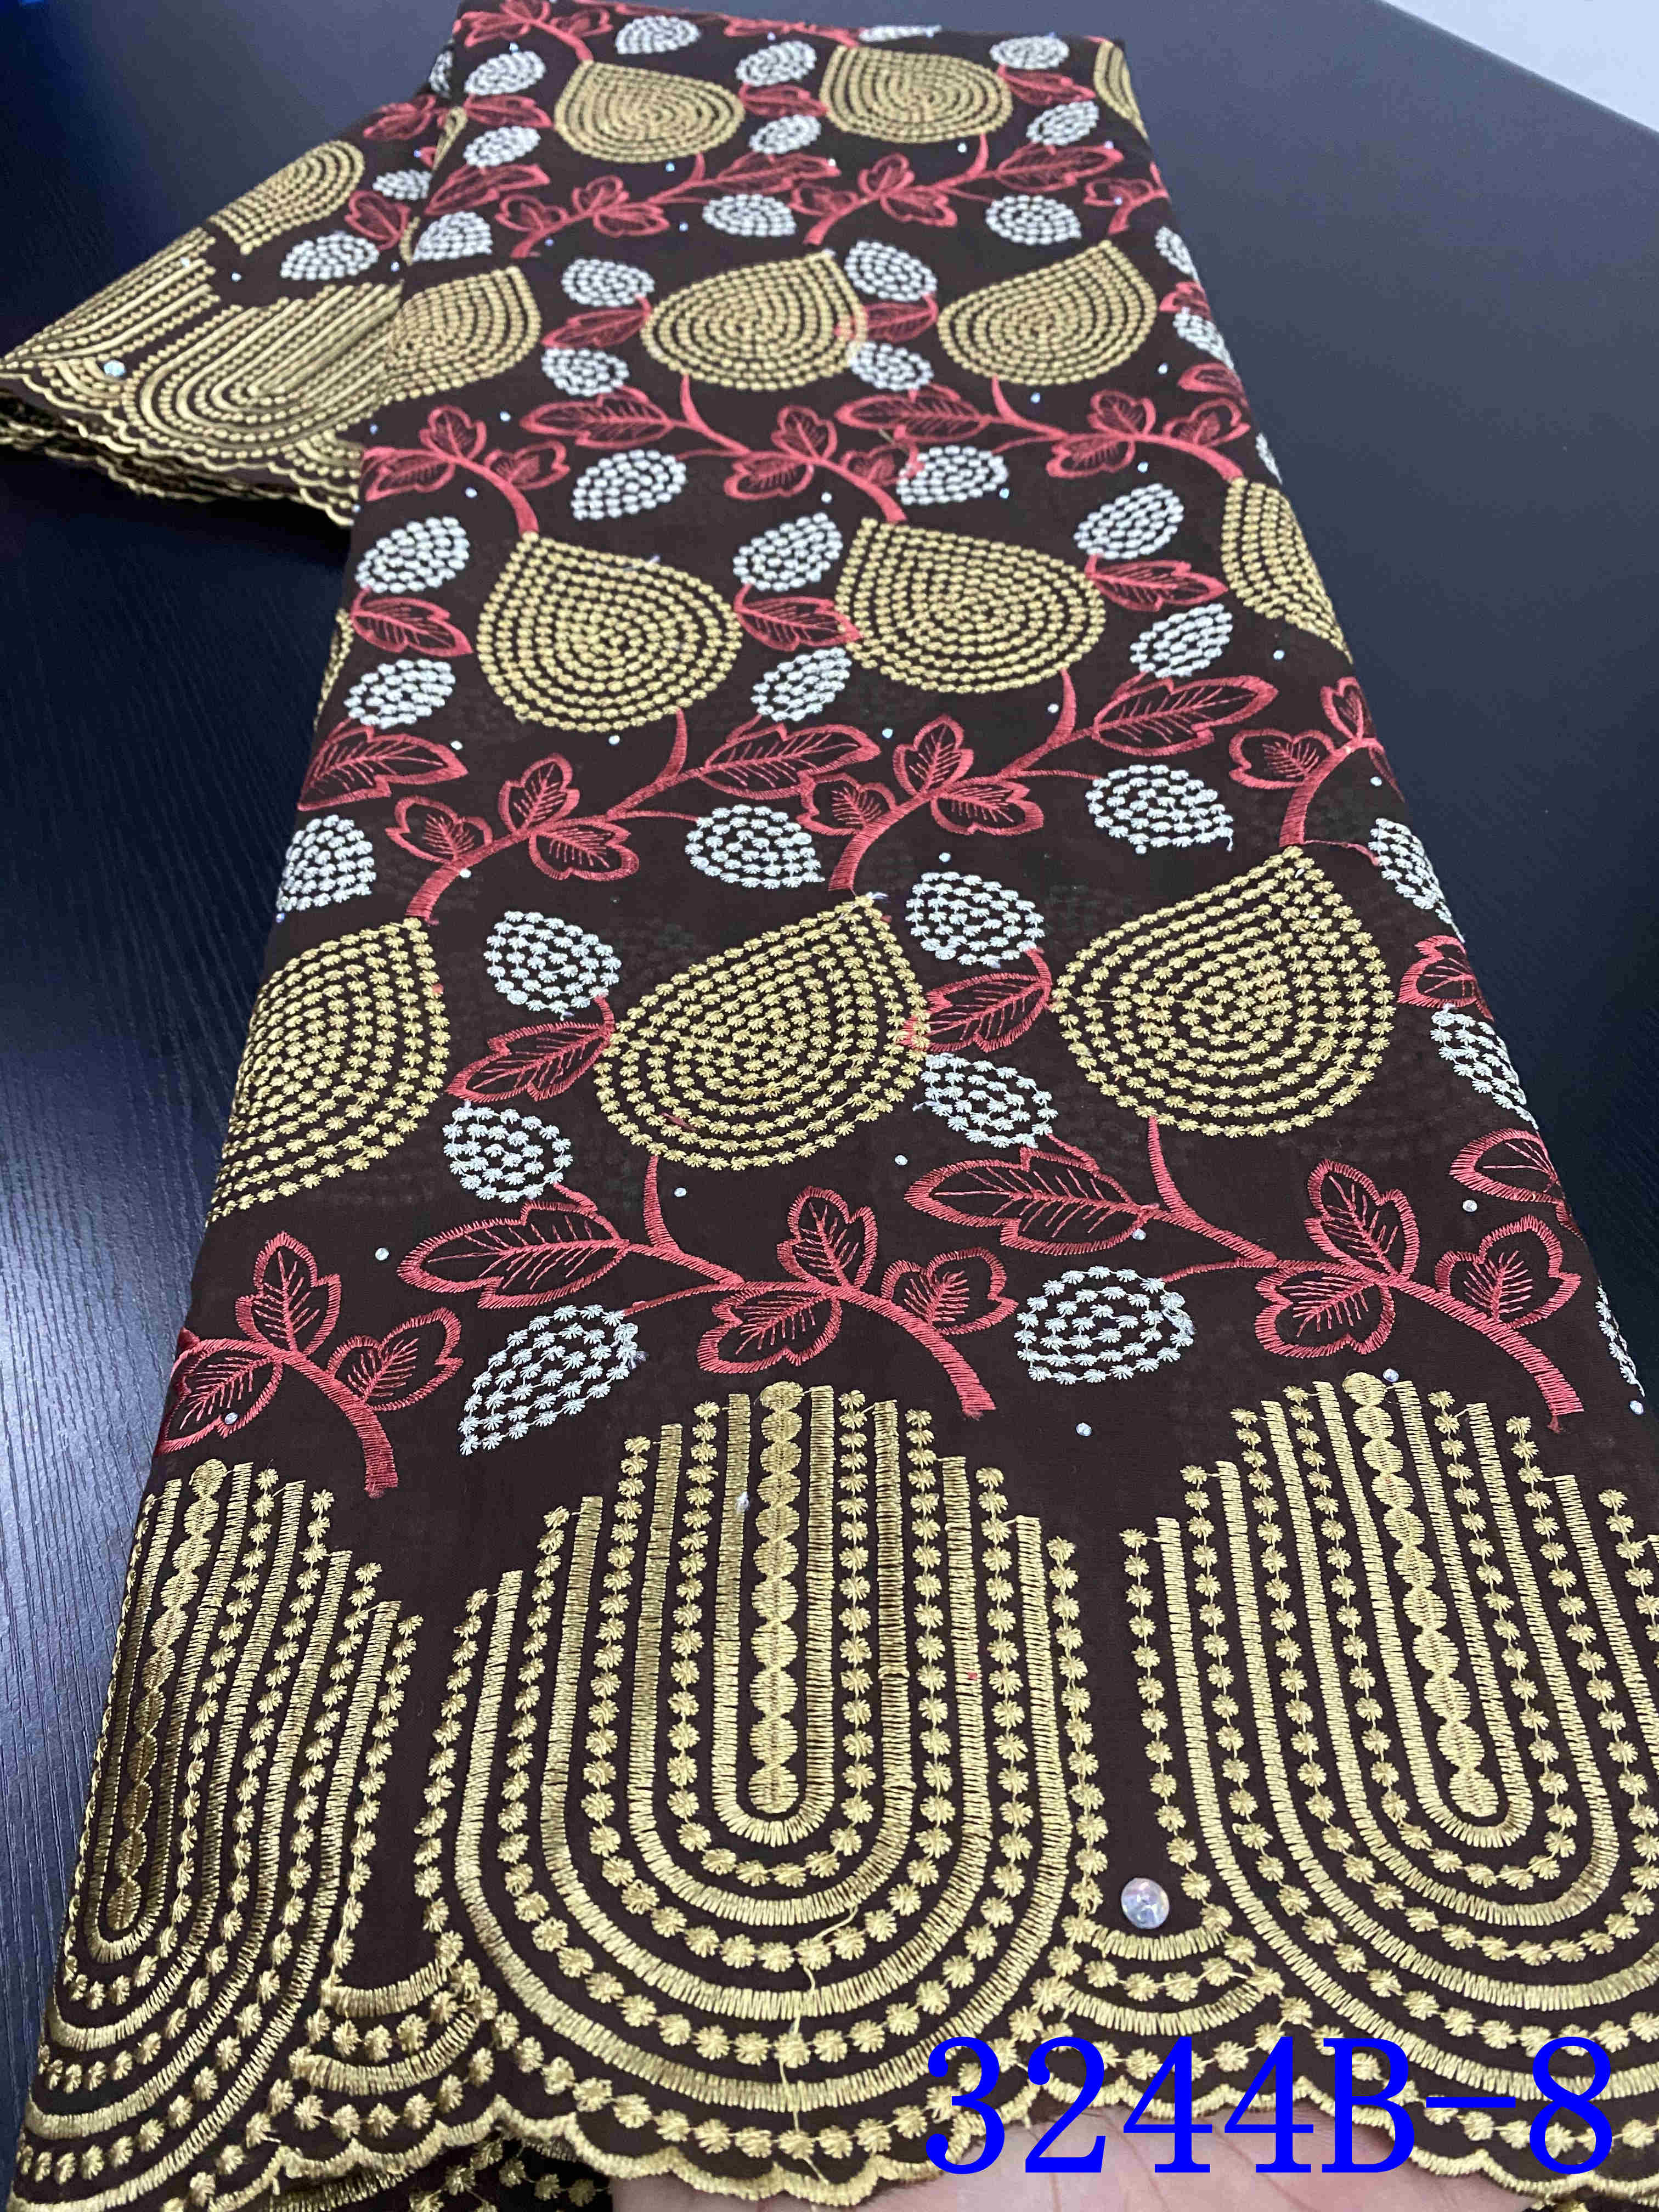 Voile blonder i schweiz afrikansk tør blonder stof broderi nigerianske blonder stoffer til beklædningsgenstand kjole  ya3244b-3: Billede 8